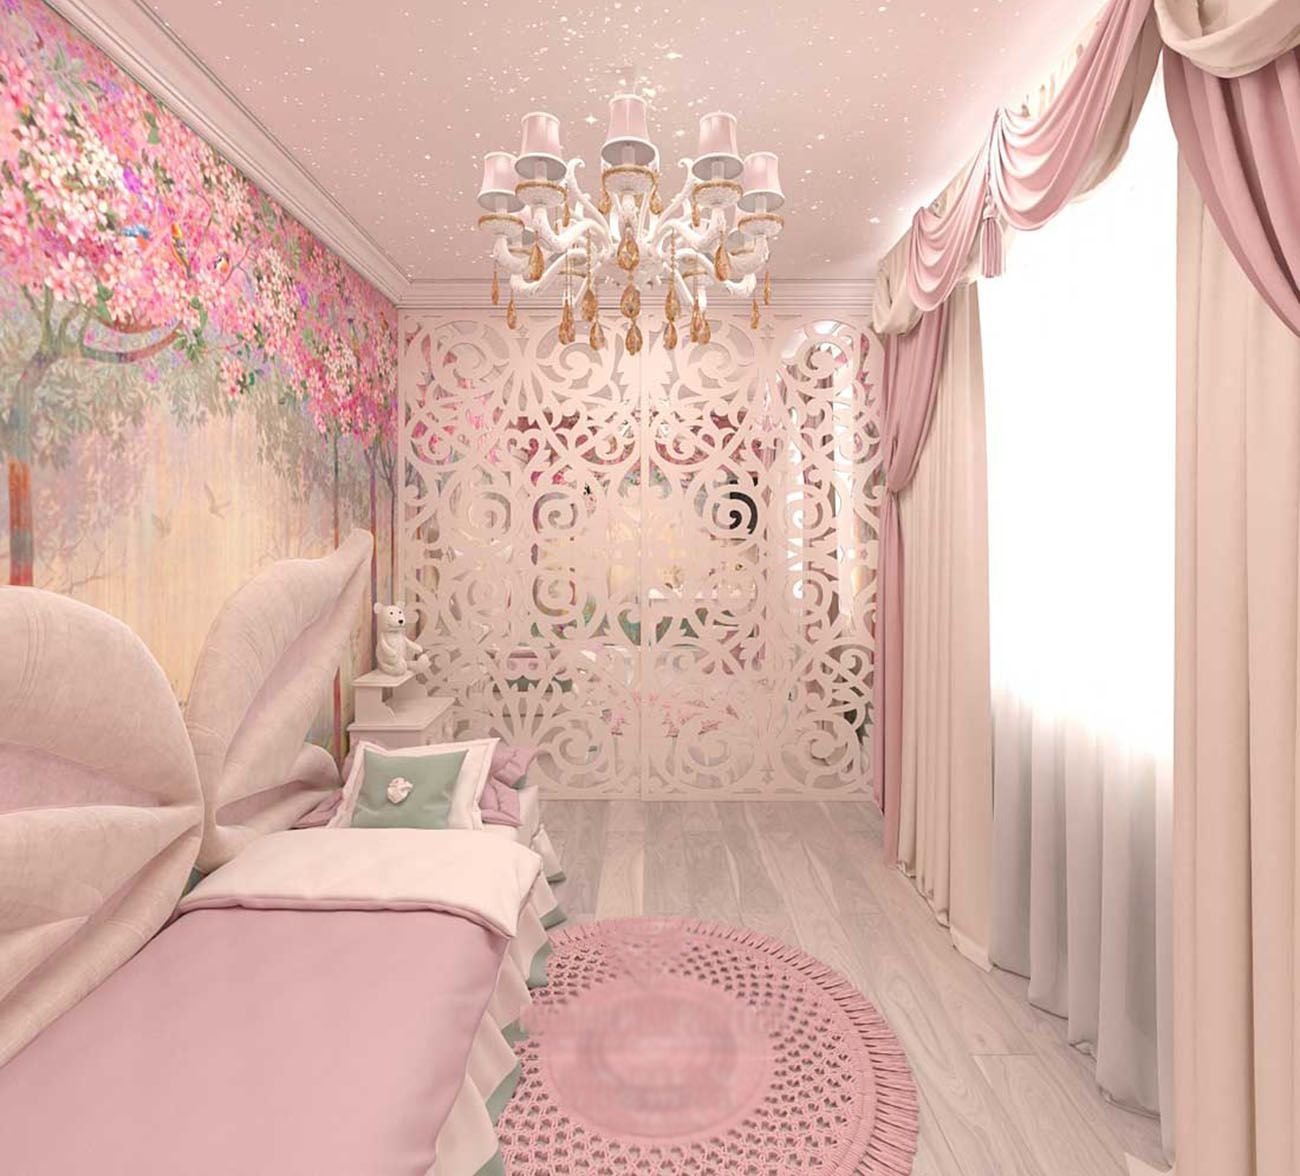 Комната в розовых тонах. Комната для девочки розового цвета. Спальня в розовых тонах. Интерьер детской комнаты девочке. Детская спальня в розовых тонах.